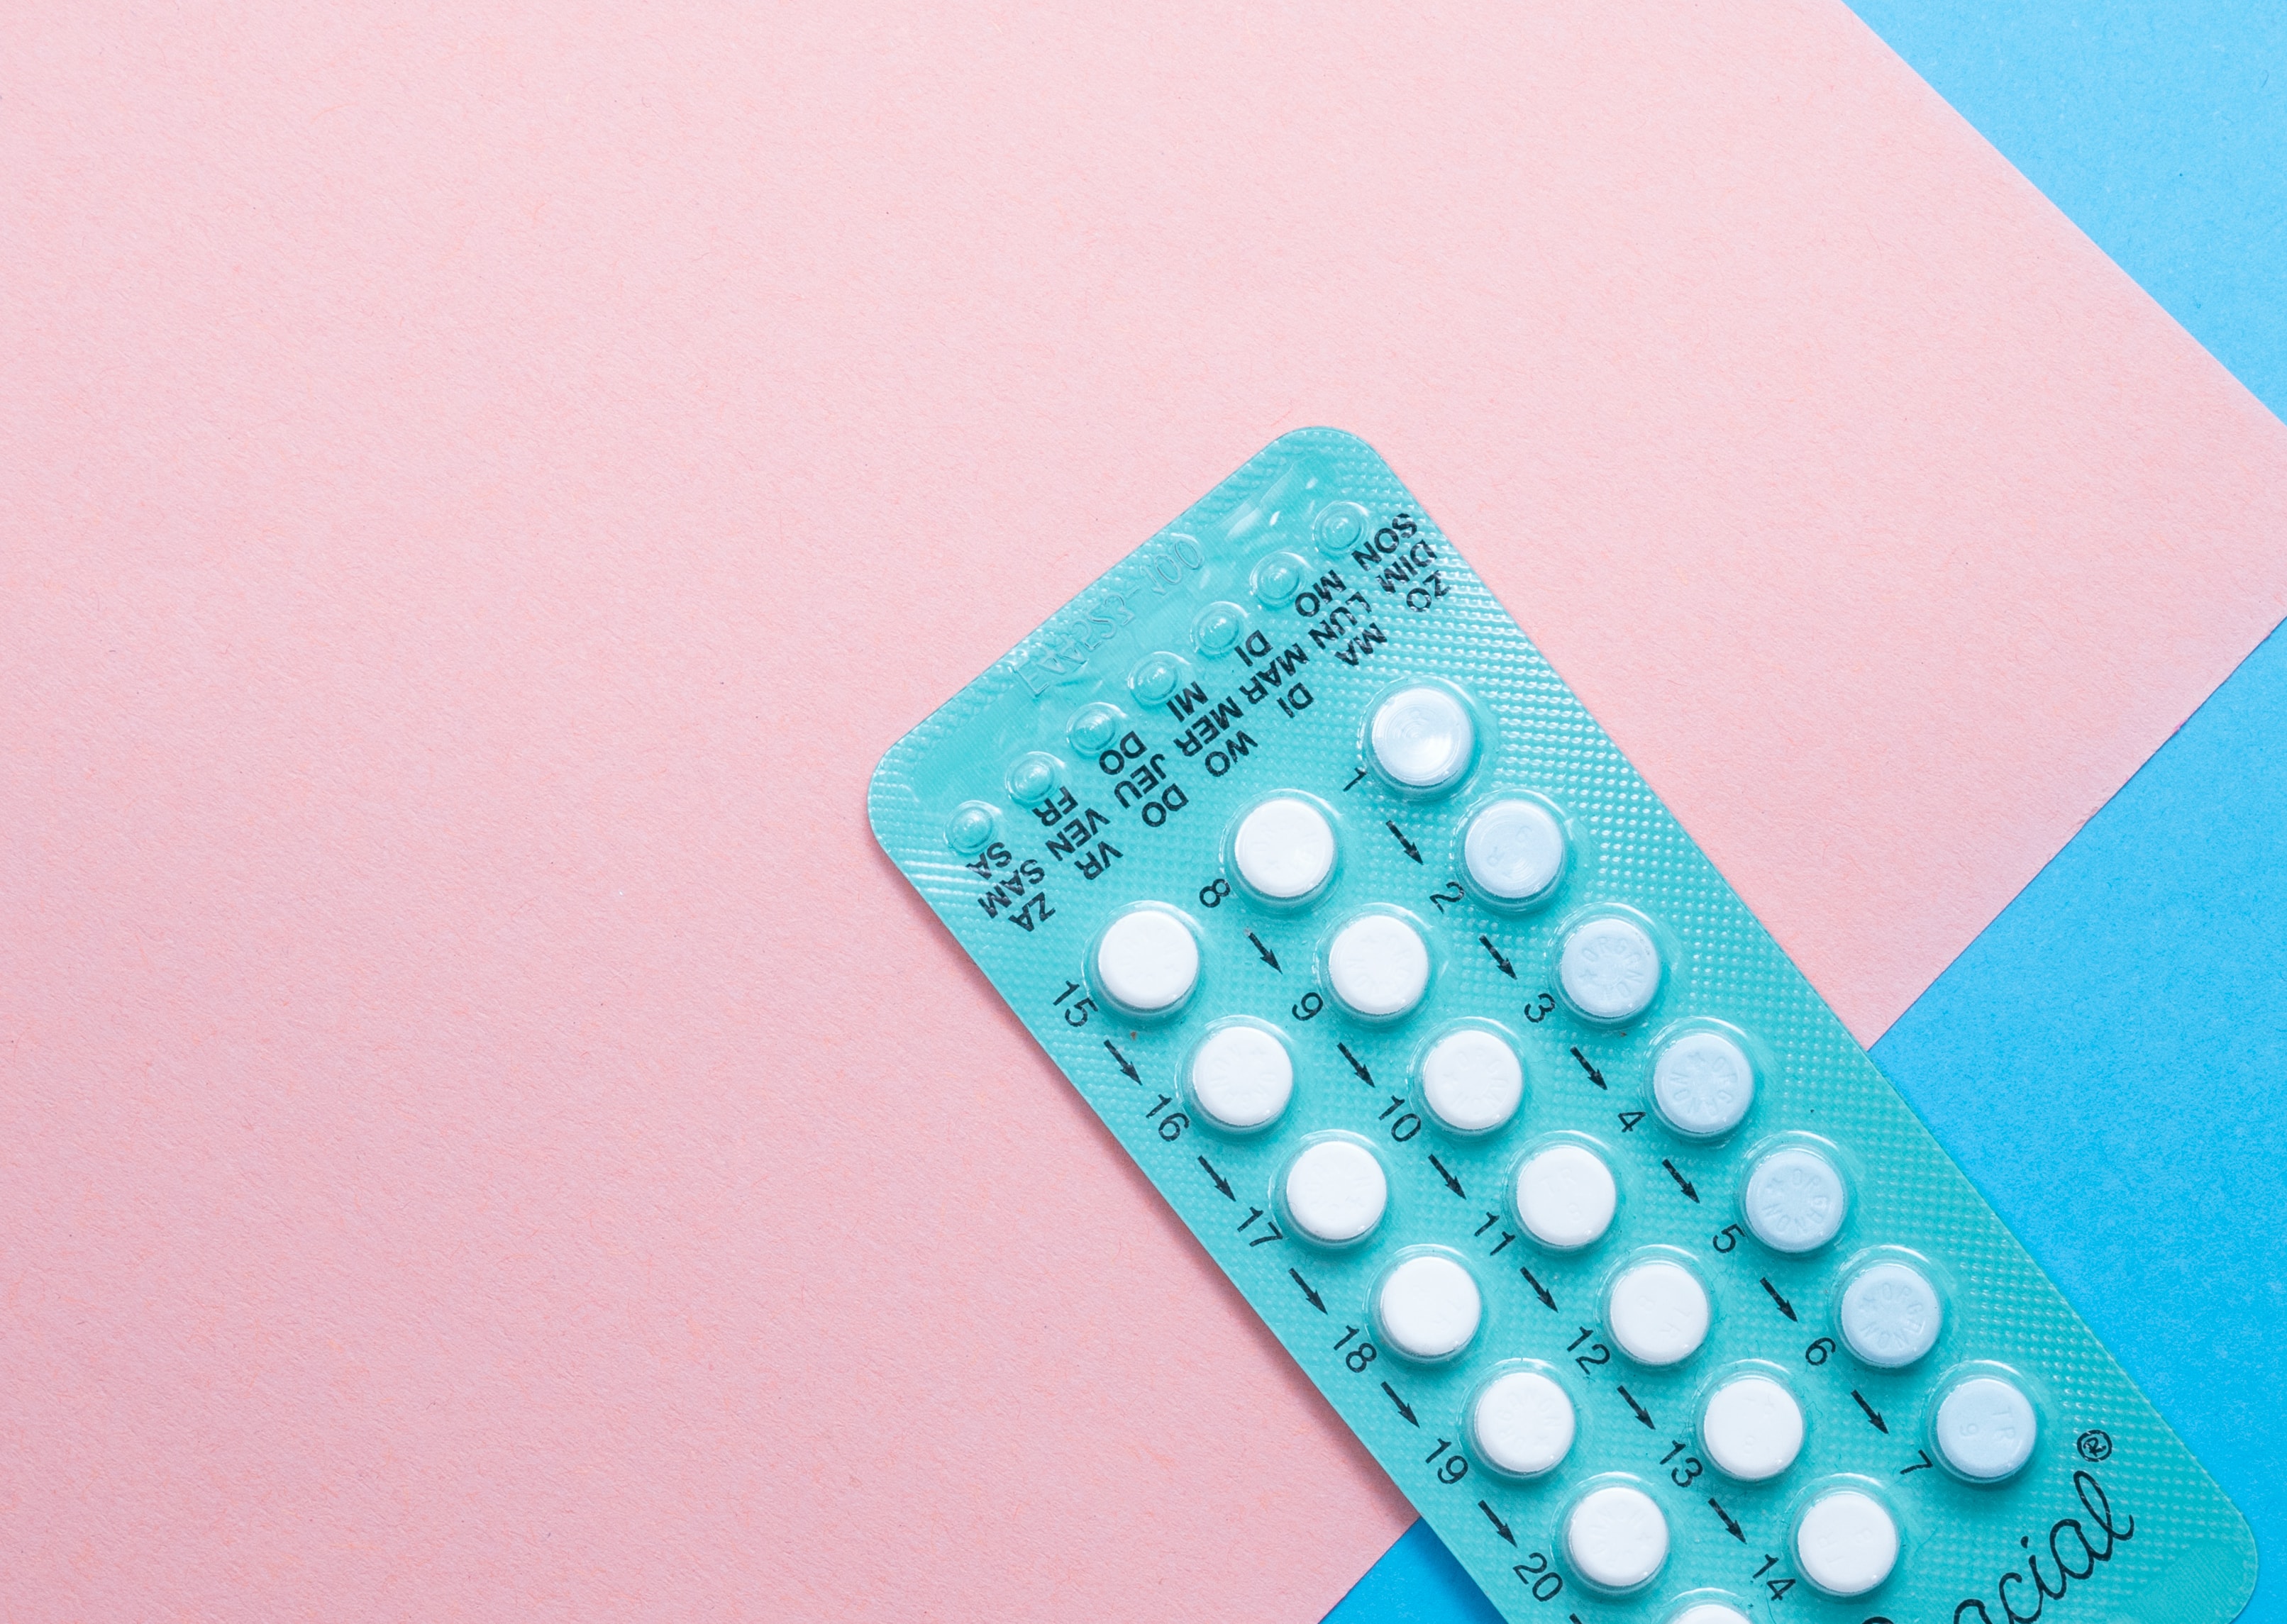 De pil anticonceptiepil nieuw onderzoek angst hersenen vrouwen